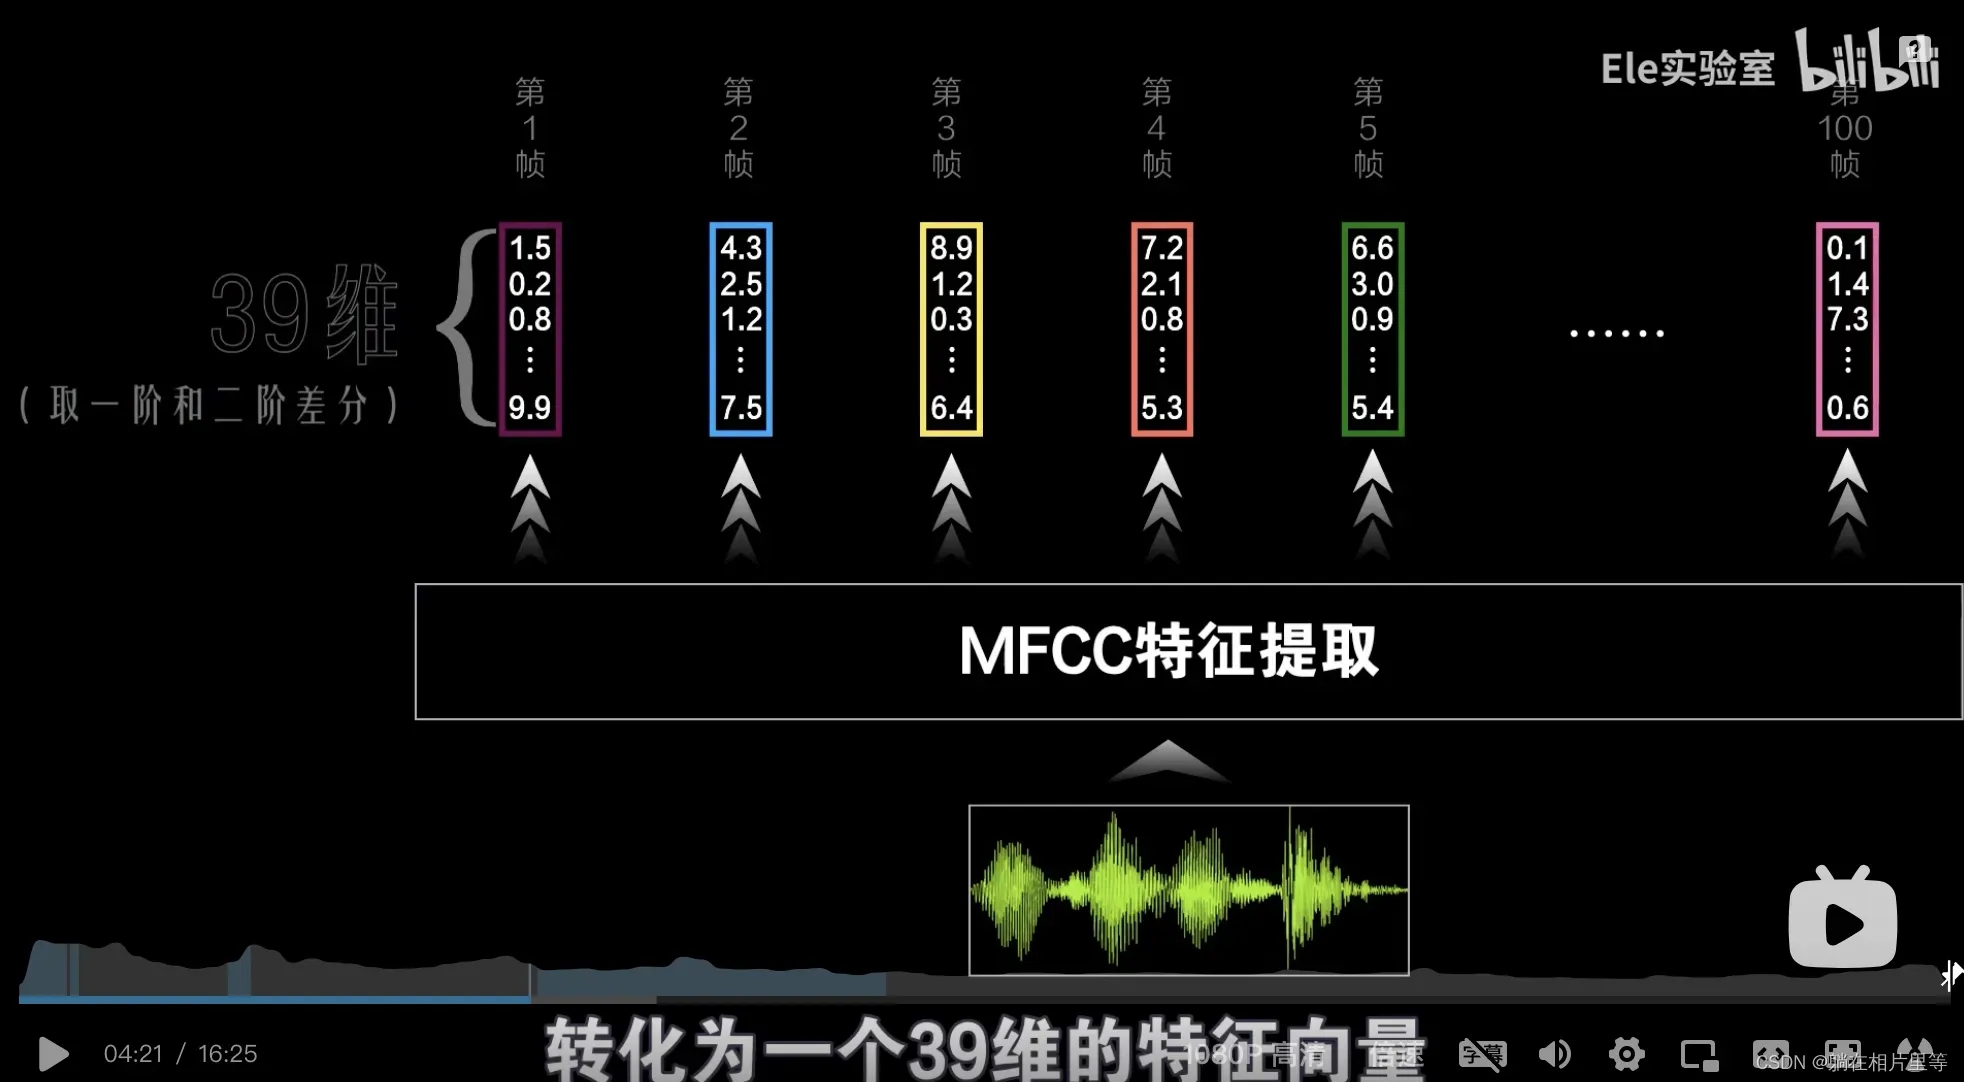 语音识别中MFCC频谱和如何得到频谱图的图示讲解